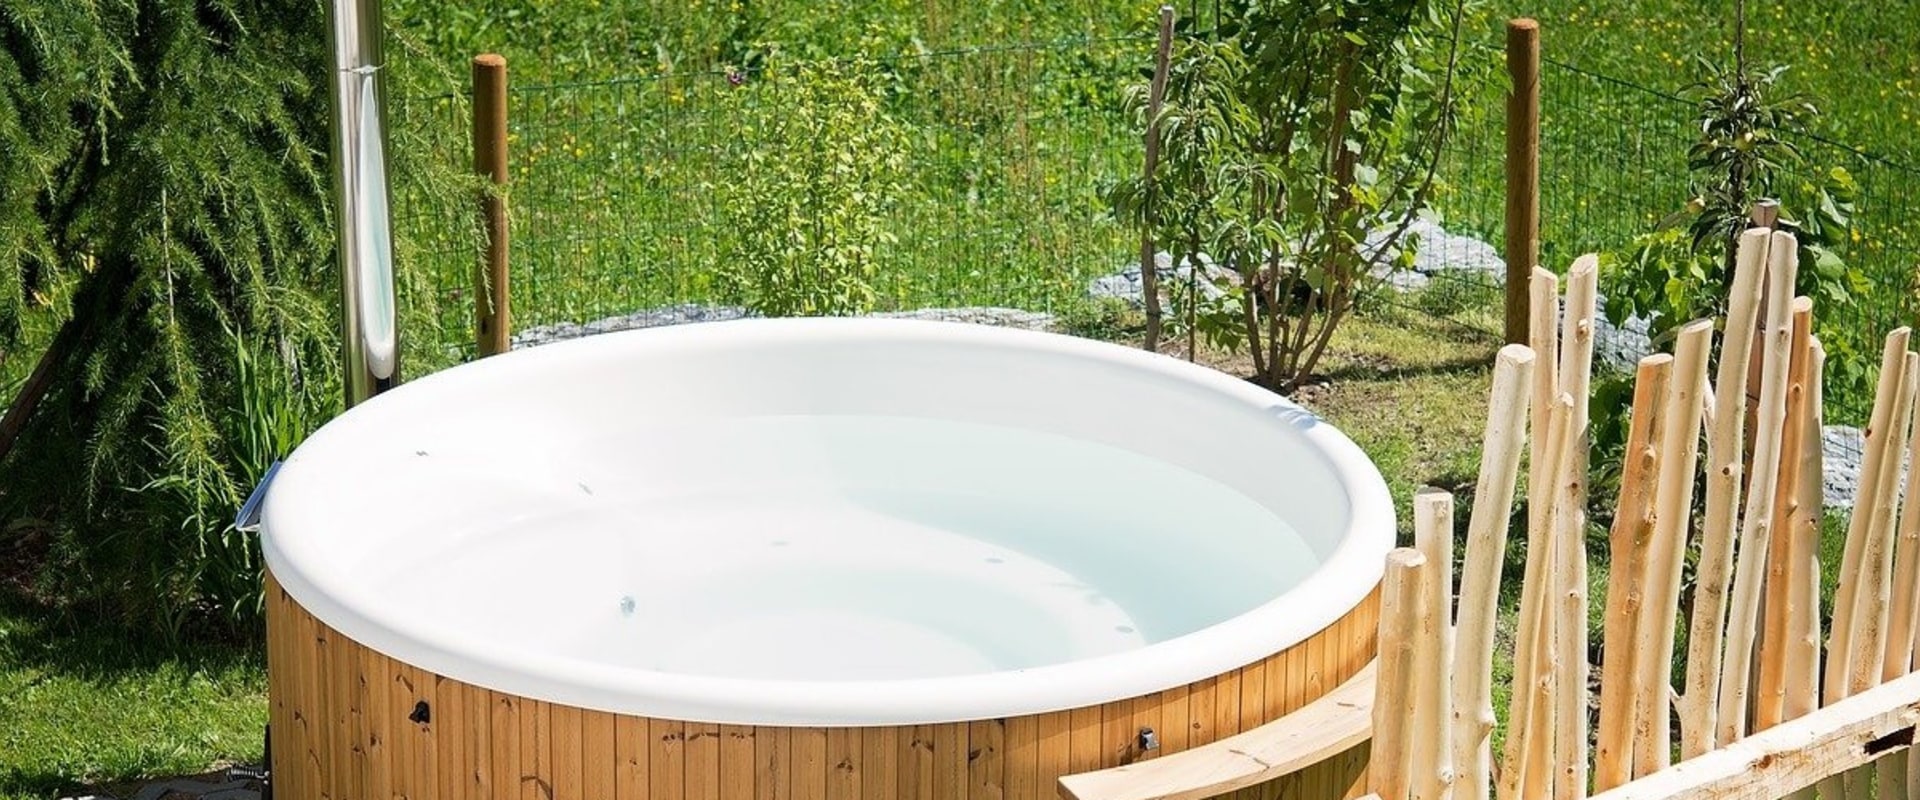 Hoeveel kwh verbruikt een gemiddelde hot tub per maand?